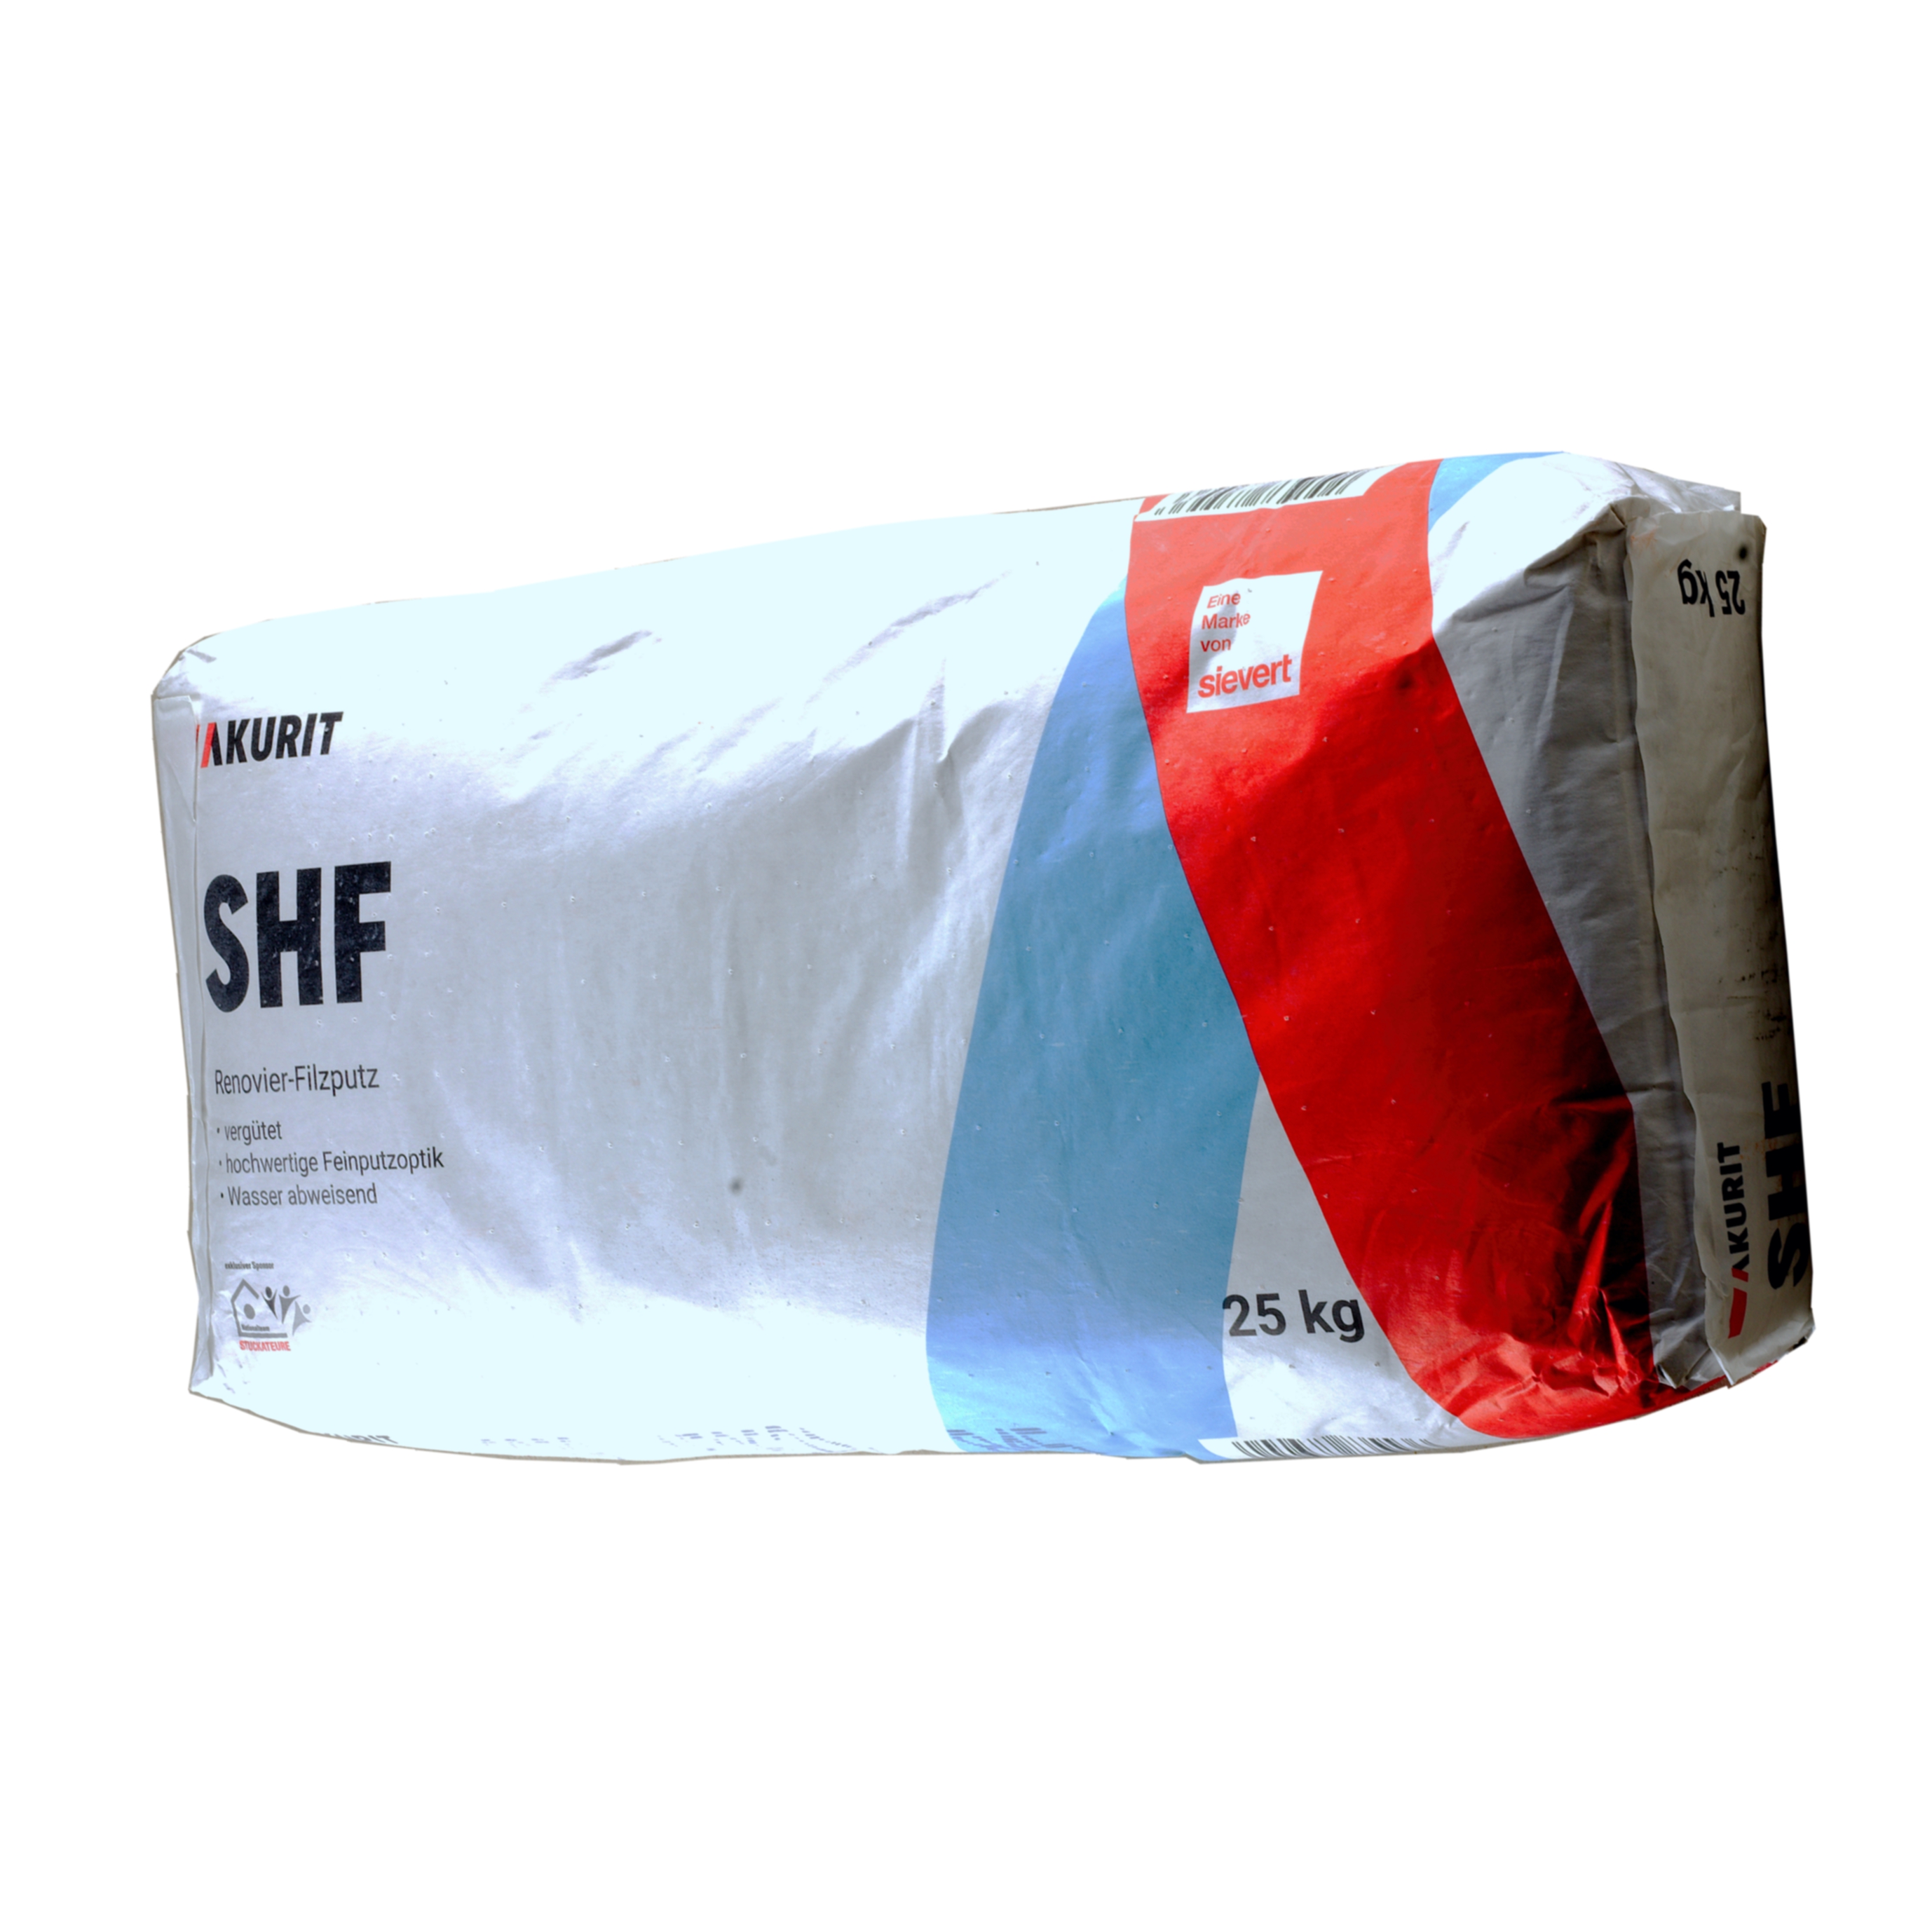 Akurit SHF Renovier-Filzputz  25 kg